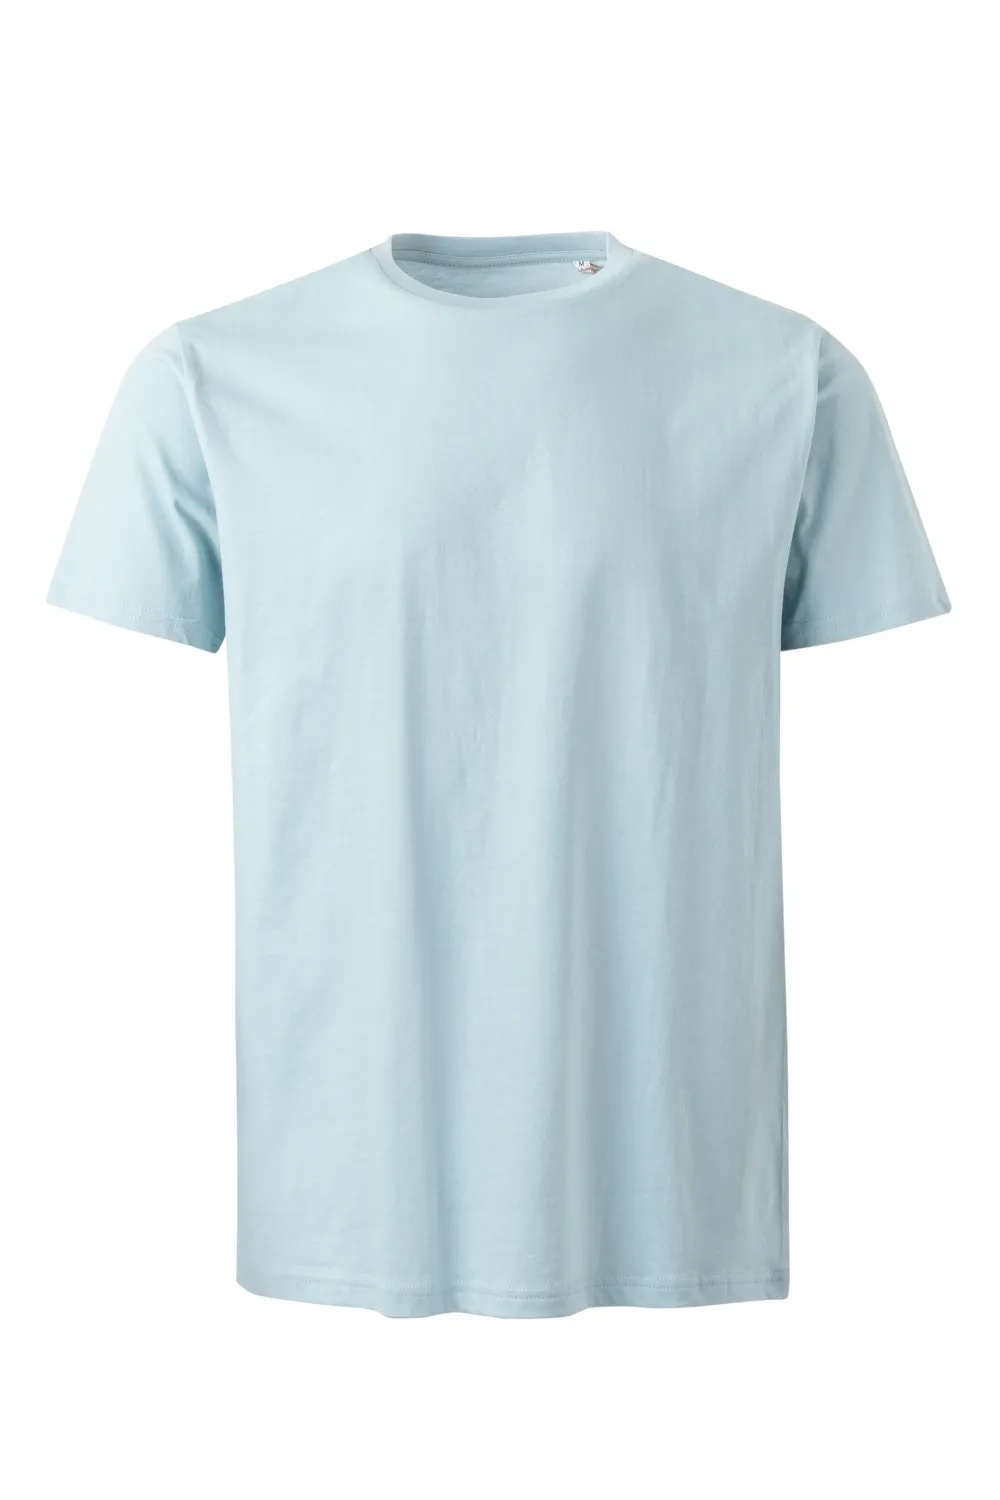 MUKUA Lake Arbeits-T-Shirt, Unisex, Bio Shirt, mit GOTS Zertifikat, und VEGAN, Verstärkter Schulterbereich, von MUKUA